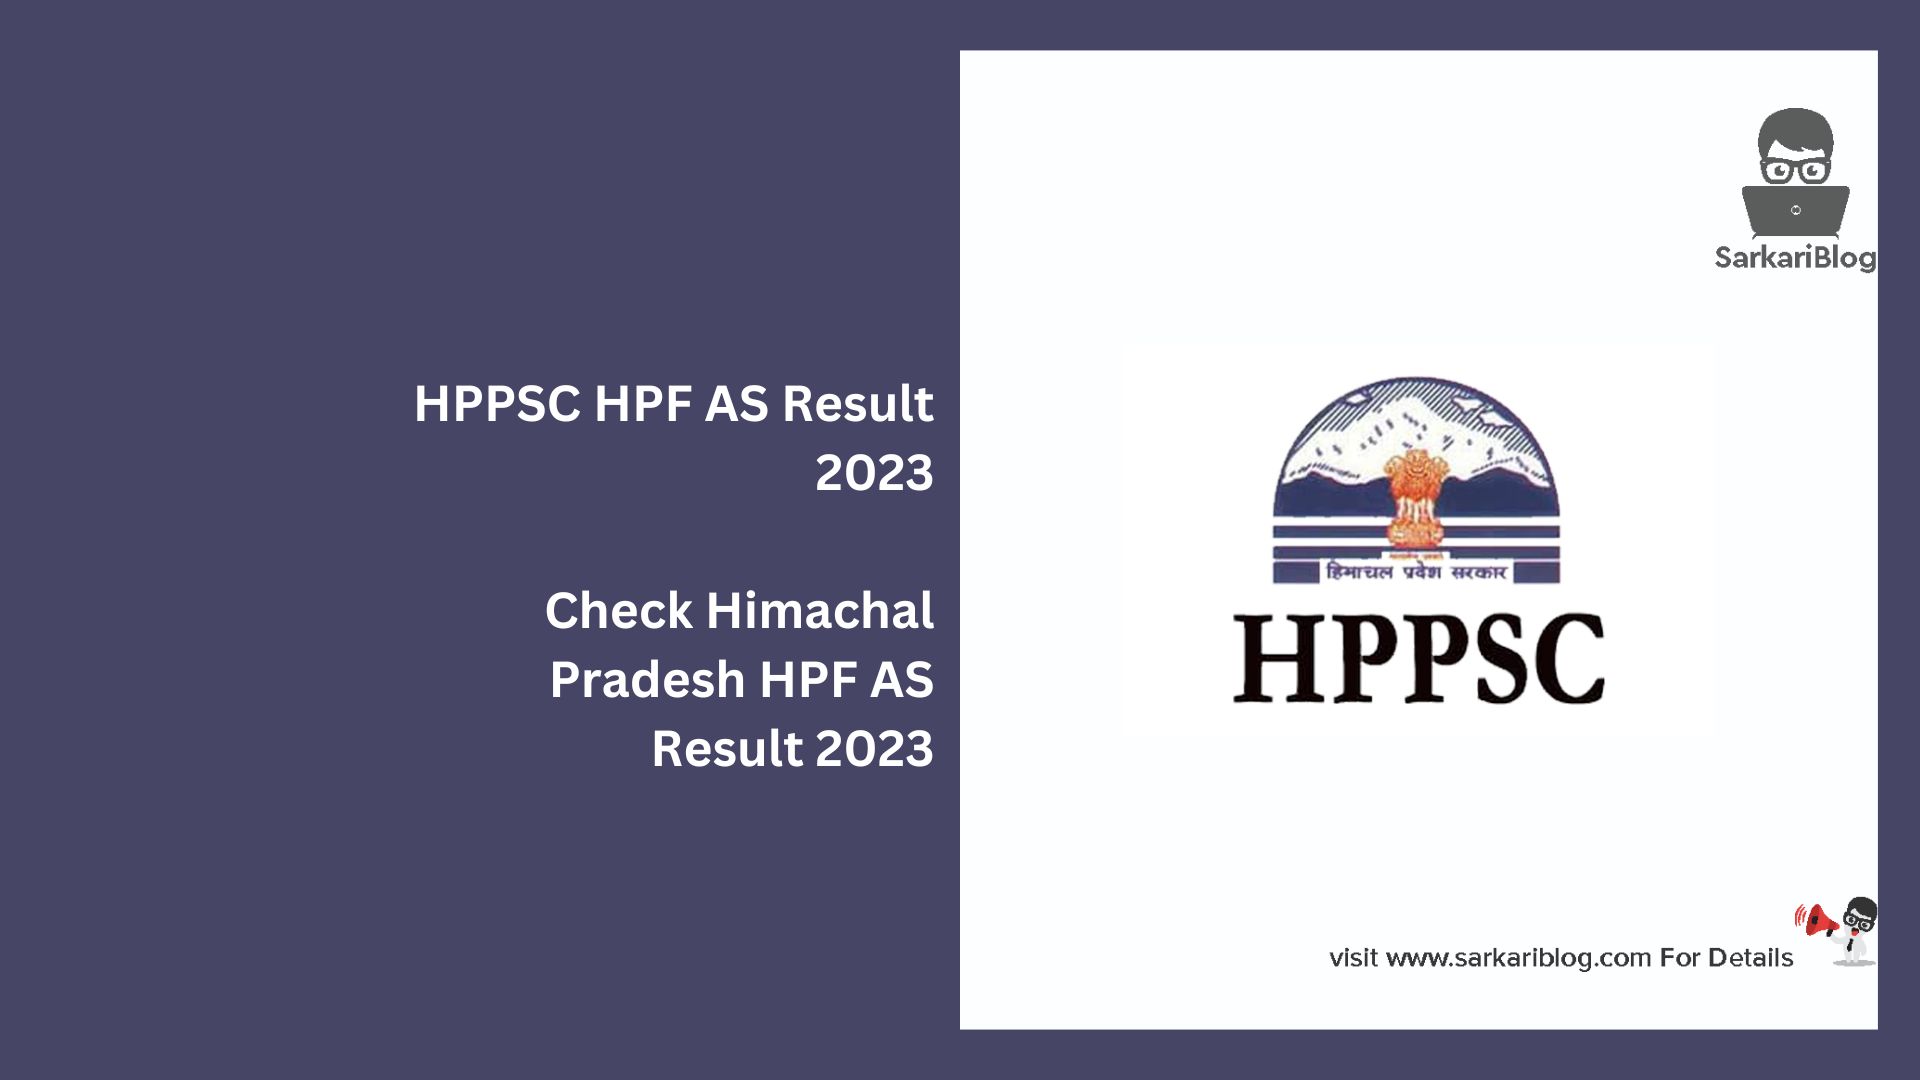 HPPSC HPF AS Result 2023